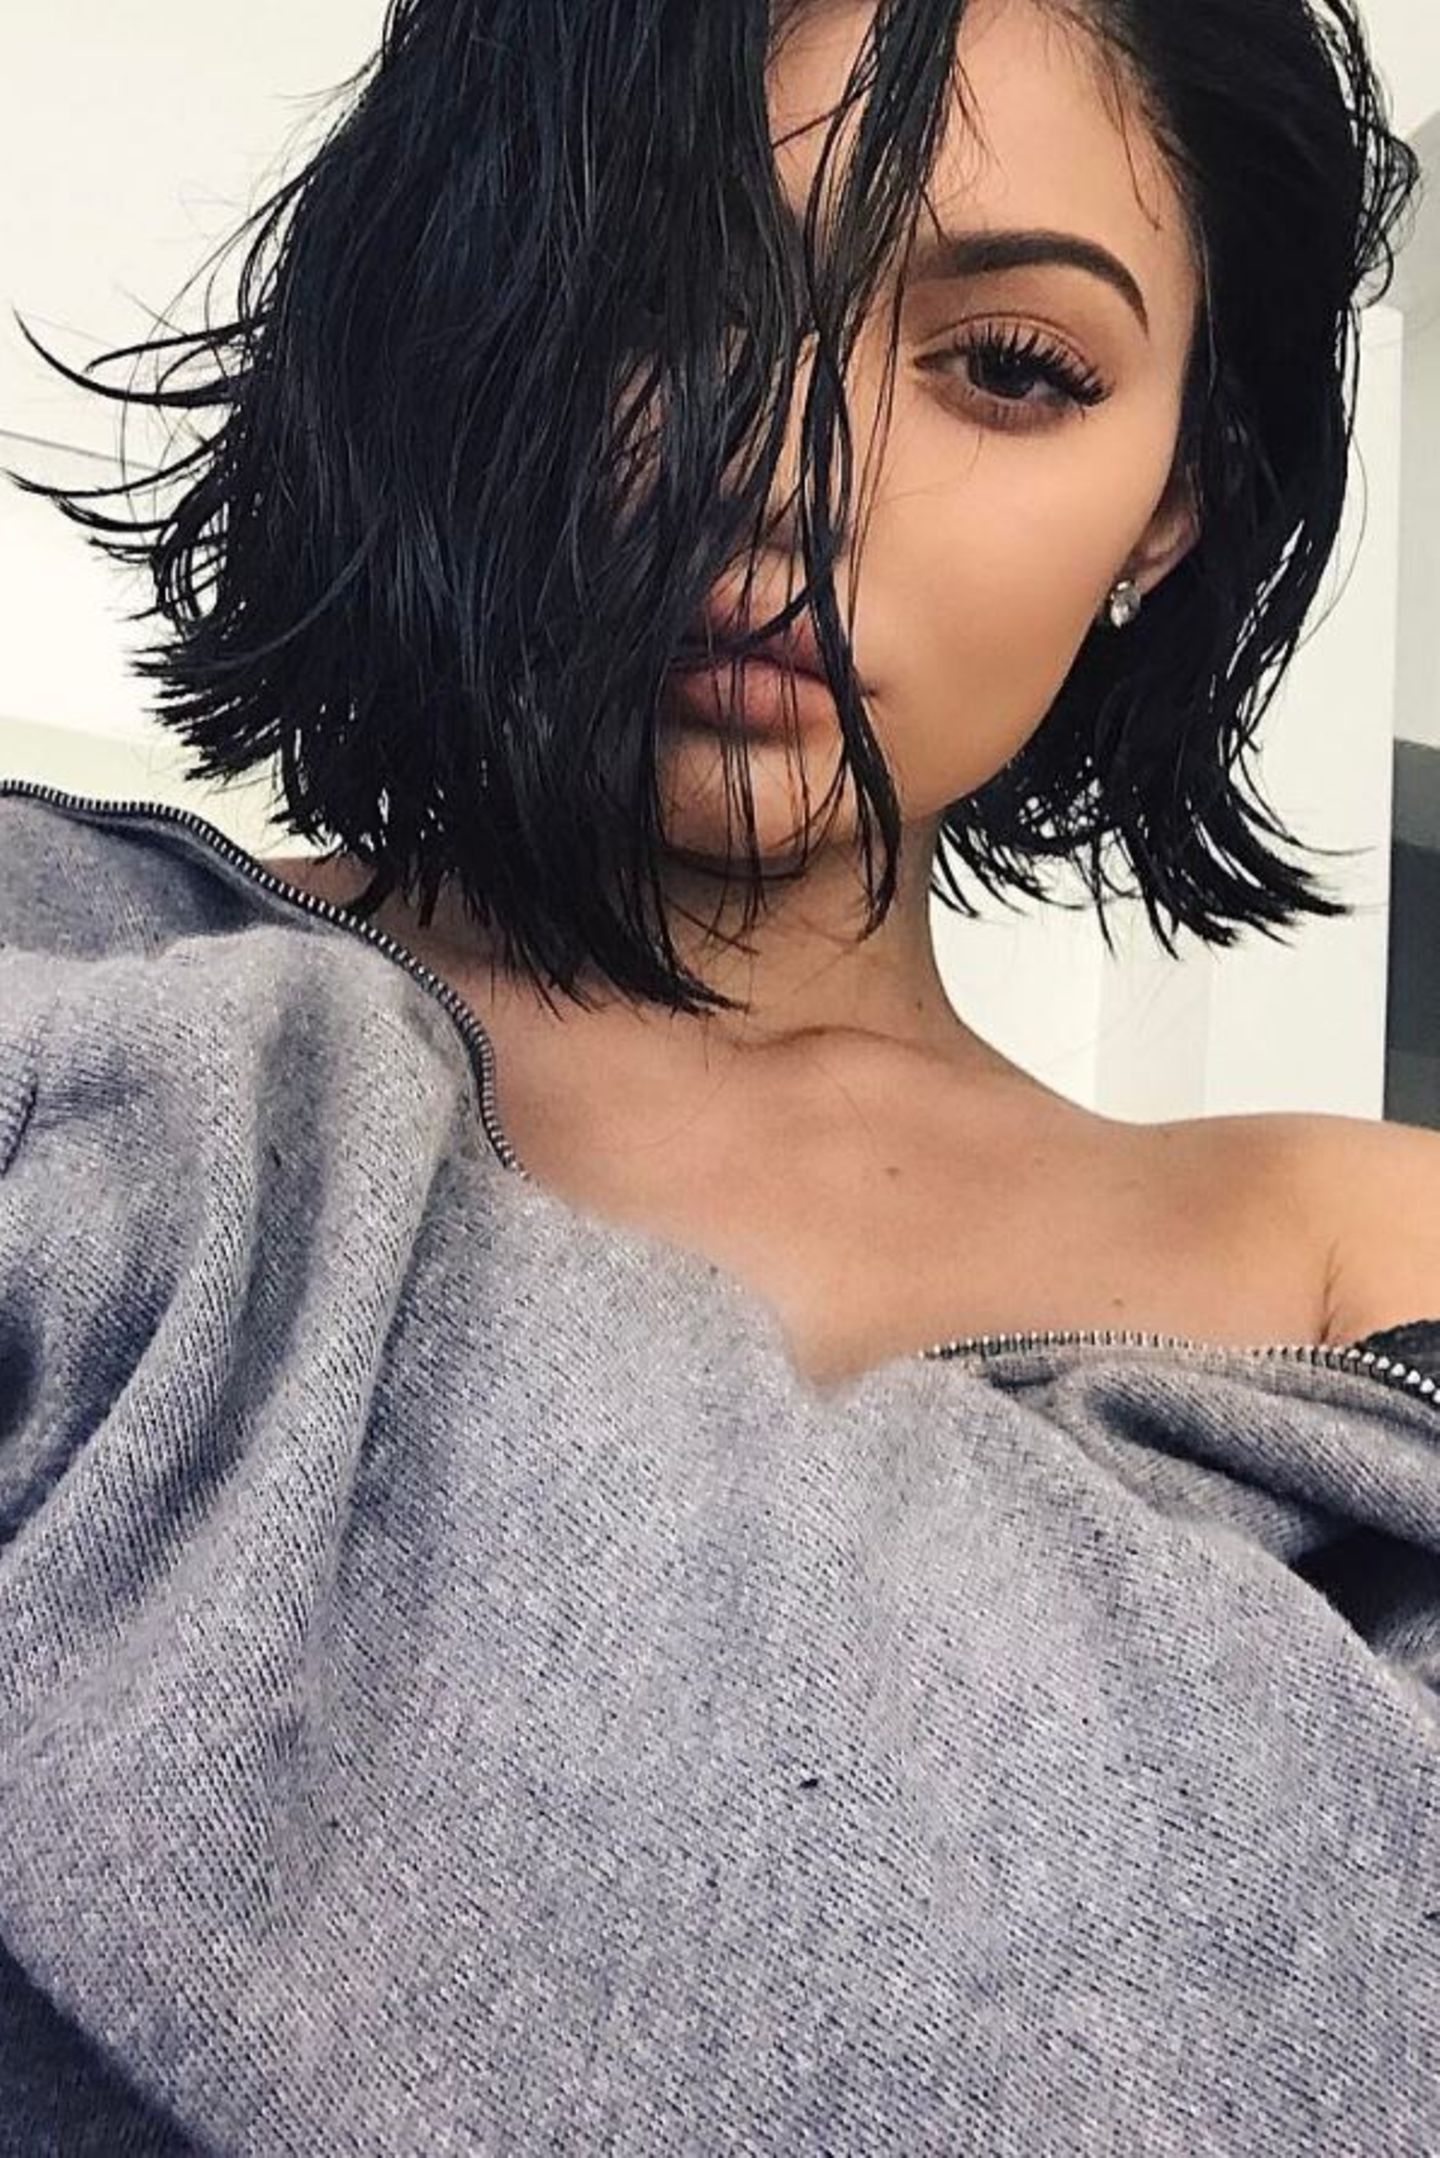 Auf Instagram teilt Kylie Jenner ein Foto ihrer neuen Frisur mit ihren über 90 Millionen Followern. Nachdem sie ihre dunklen Haare zuletzt (dank Extensions) super lang trug, hat sie sich jetzt für einen ganz kurzen Schnitt entschieden. Die 19-Jährige ist jedoch bekennender Fan von Perücken, also könnte es sein, dass sie ihre Haare schon morgen wieder ganz lang trägt... 